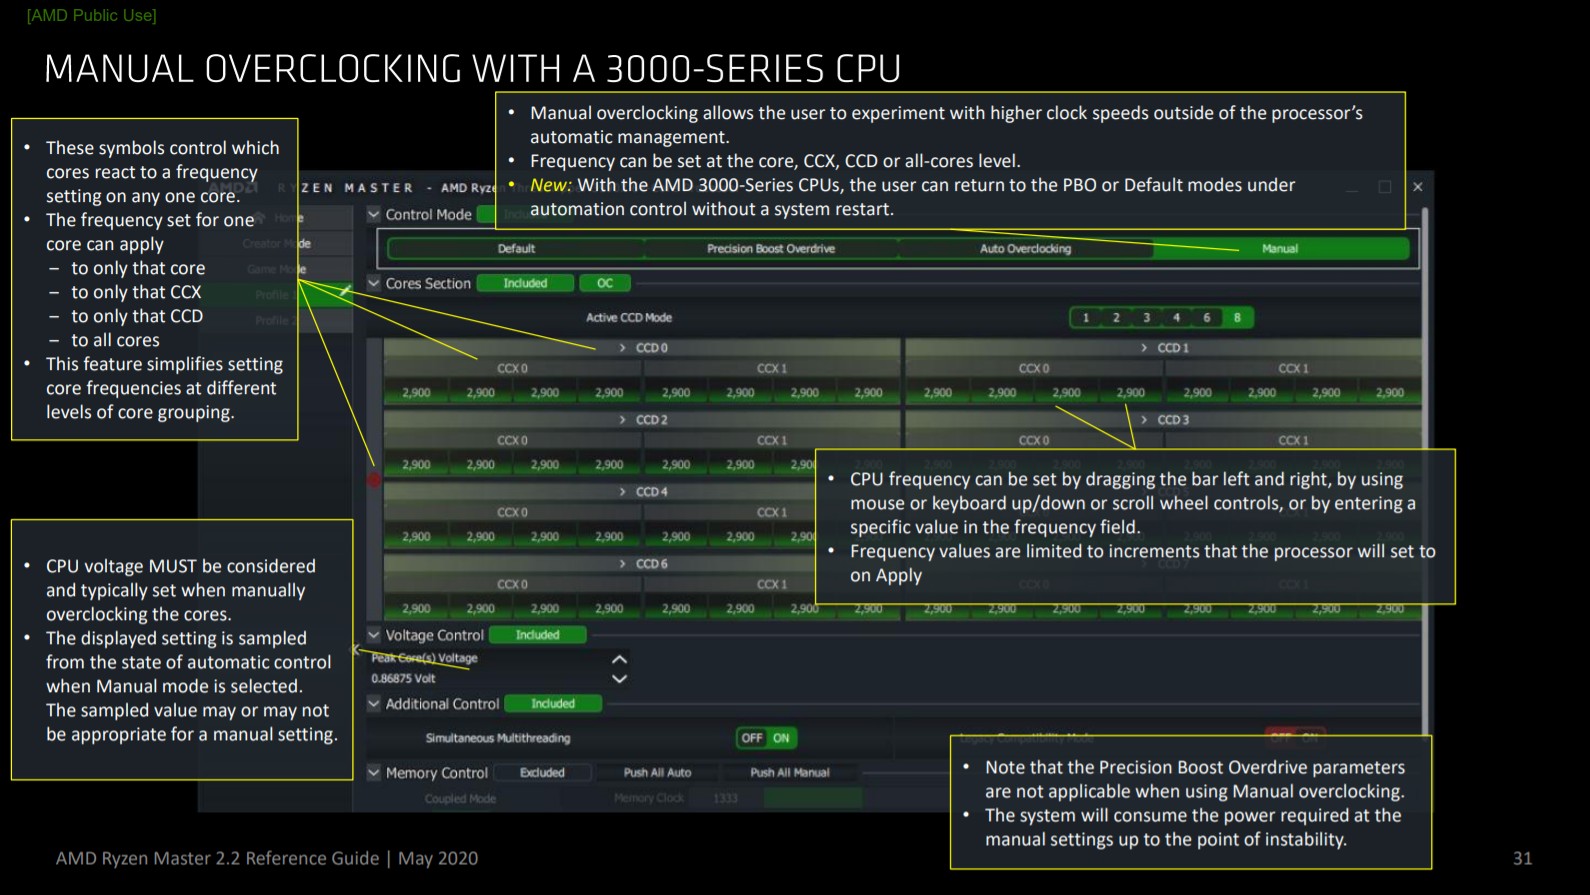 วิธีใช้ Ryzen Master 2.2 ของ AMD (ฉบับเดือนพฤษภาคม 2020) เพื่อโอเวอร์คล็อก CPU ของคุณ 